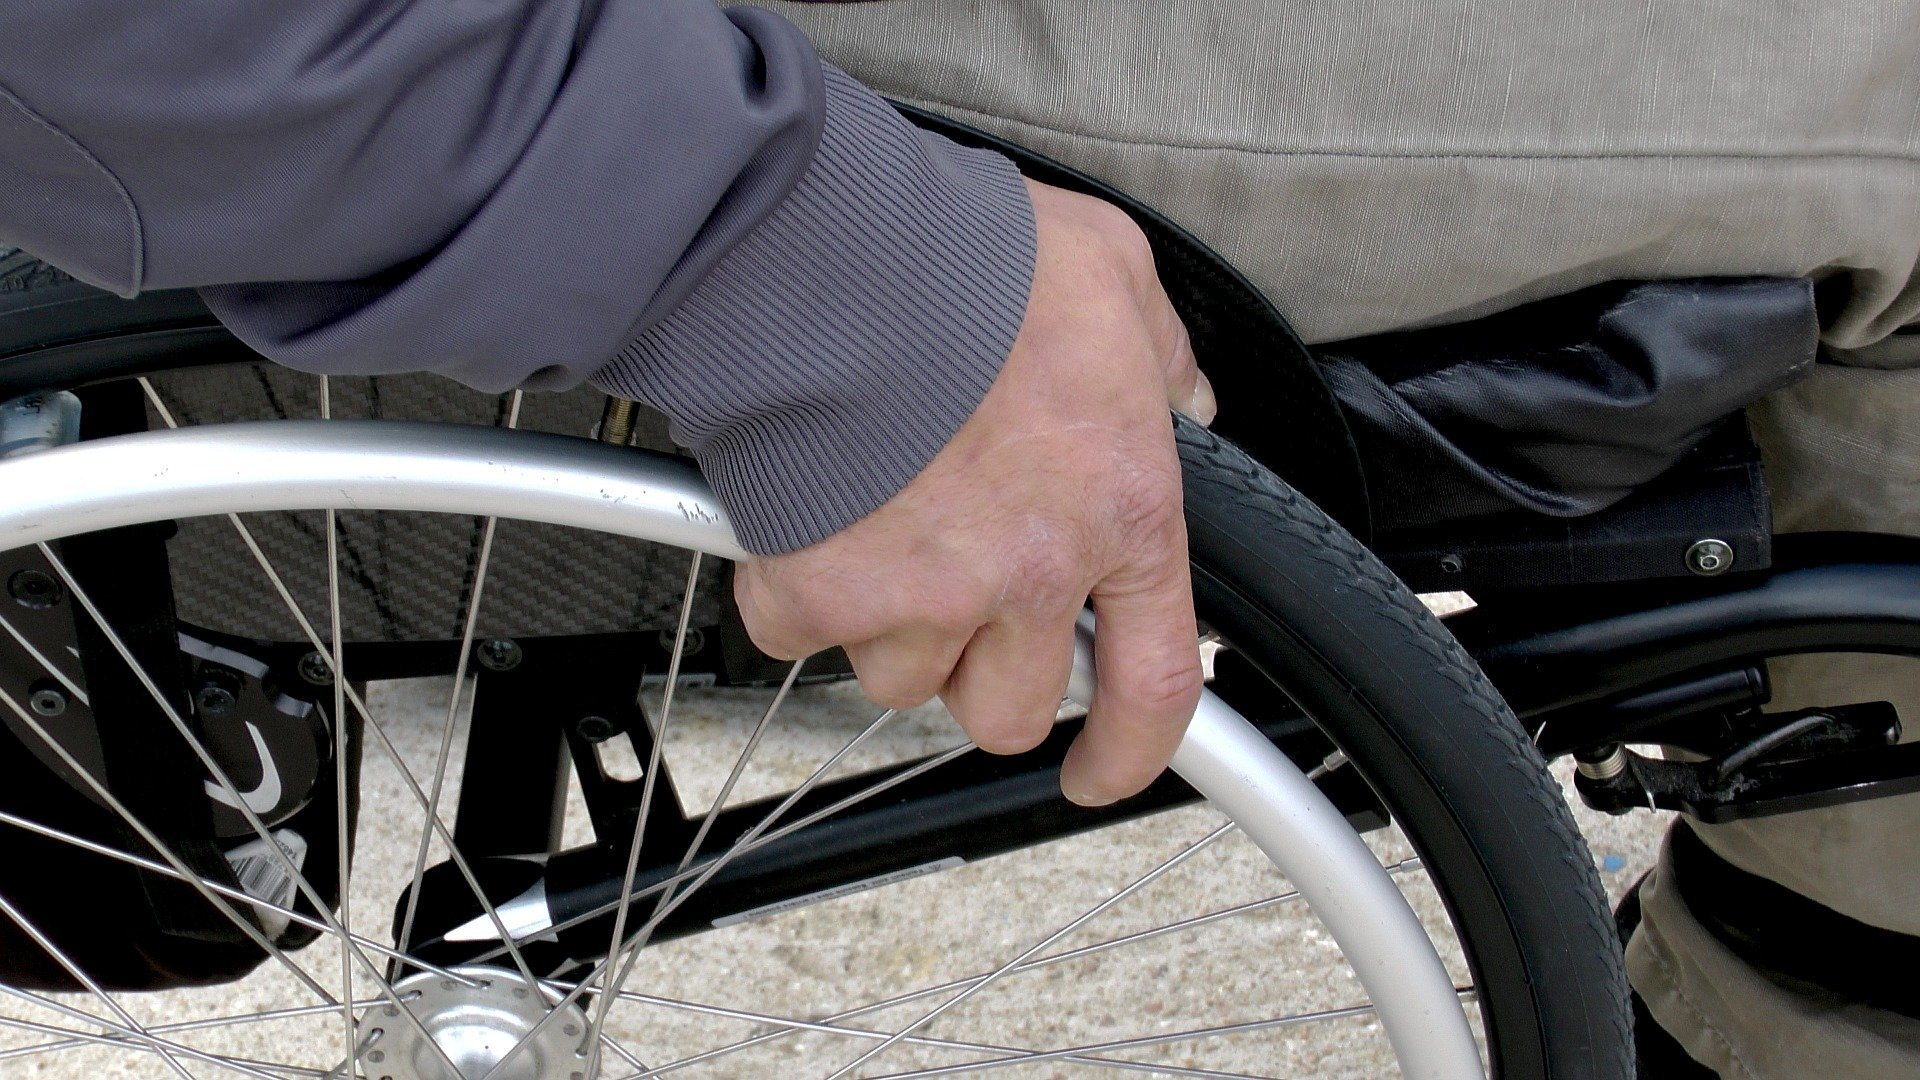 Hombre discapacitado en silla de ruedas. Fuente: Pixabay